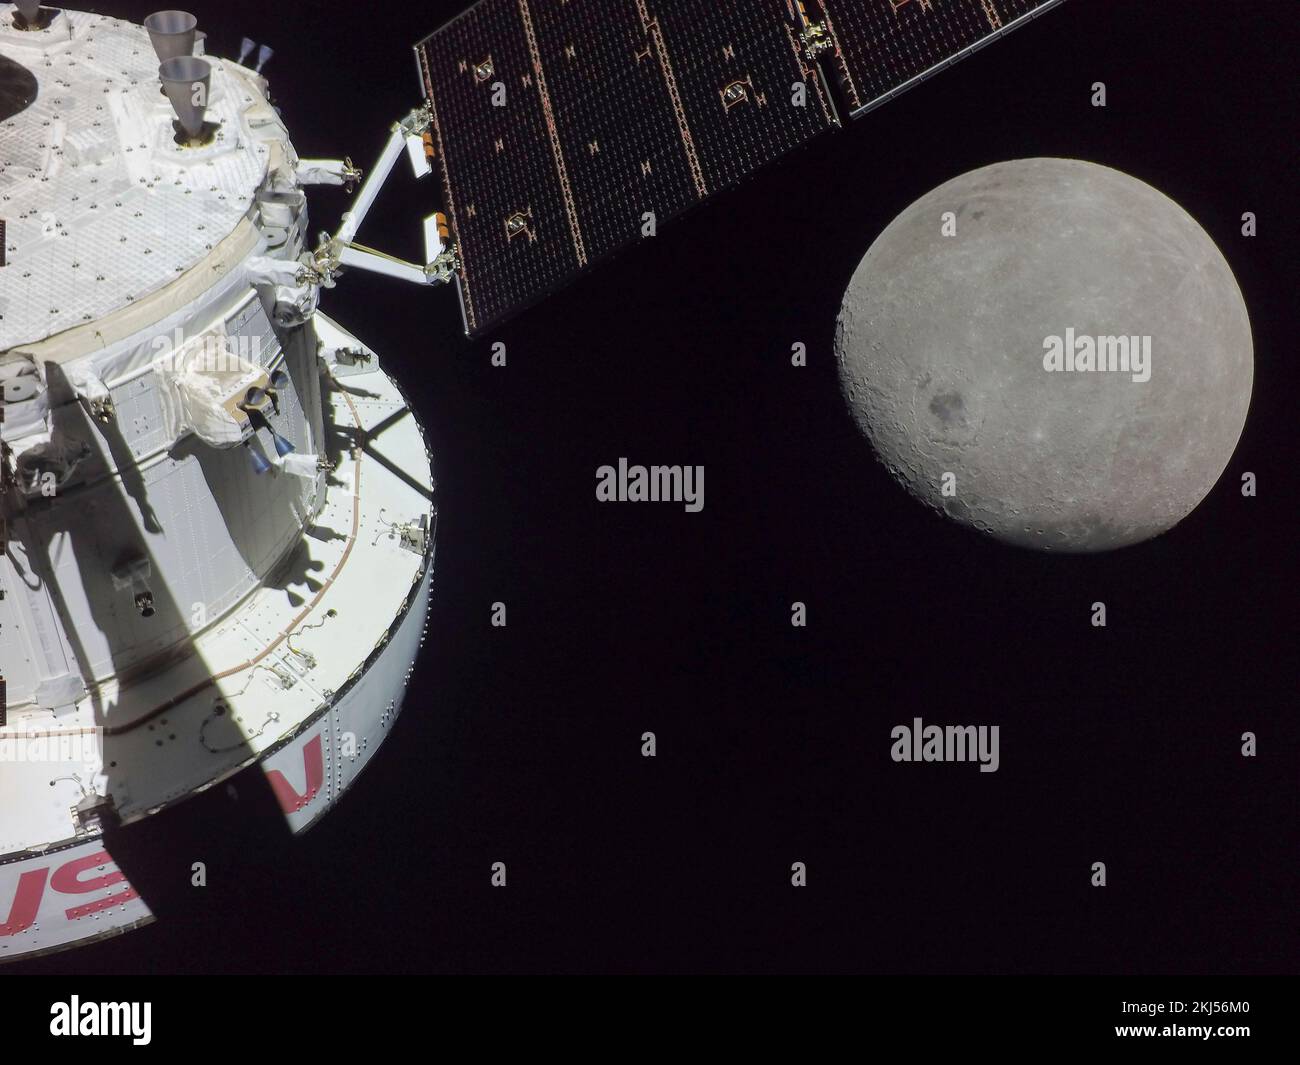 Orbite de la terre, orbite de la terre. 21 novembre 2022. Selfie de la capsule d'équipage Orion lors de l'approche la plus proche de la Lune en bas à droite comme il se positionne pour un survol lunaire, le sixième jour de vol de la mission Artemis I de la NASA, 21 novembre 2022, dans l'orbite de la Terre. L'image a été capturée par une caméra à l'extrémité d'un des panneaux solaires lorsqu'elle s'approchait de la lune. Credit: NASA/NASA/Alamy Live News Banque D'Images